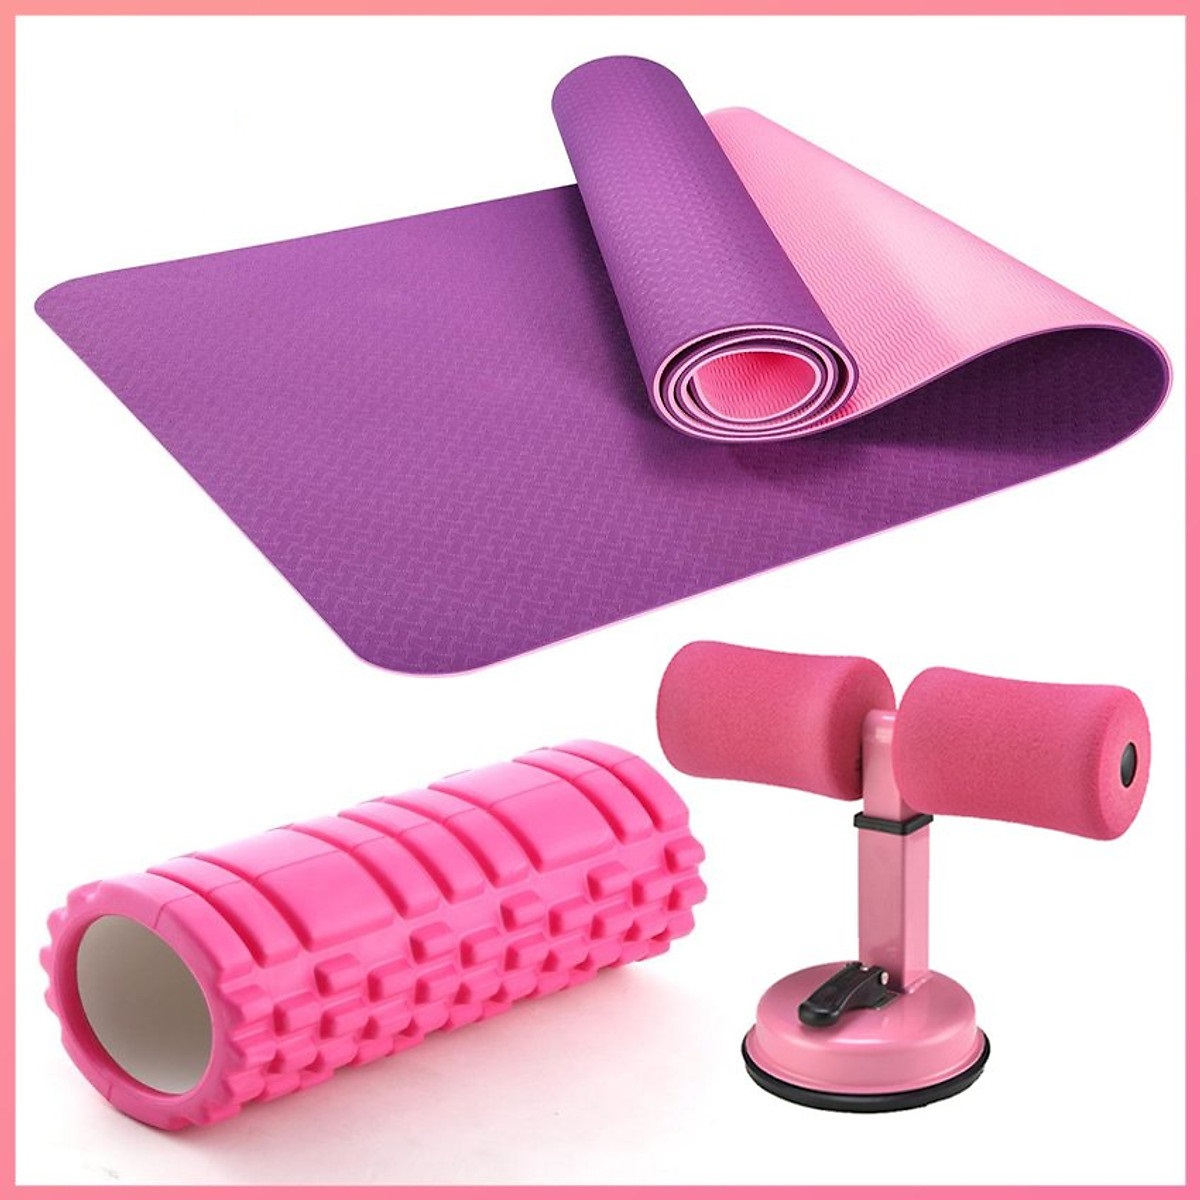 Combo 3 sản phẩm tập Yoga :1 thảm Yoga 2 lớp 6mm (tặng kèm túi ) +1 ống lăn massage hình trụ 33cm x 14cm + 1 dụng cụ tập bụng hình chữ T